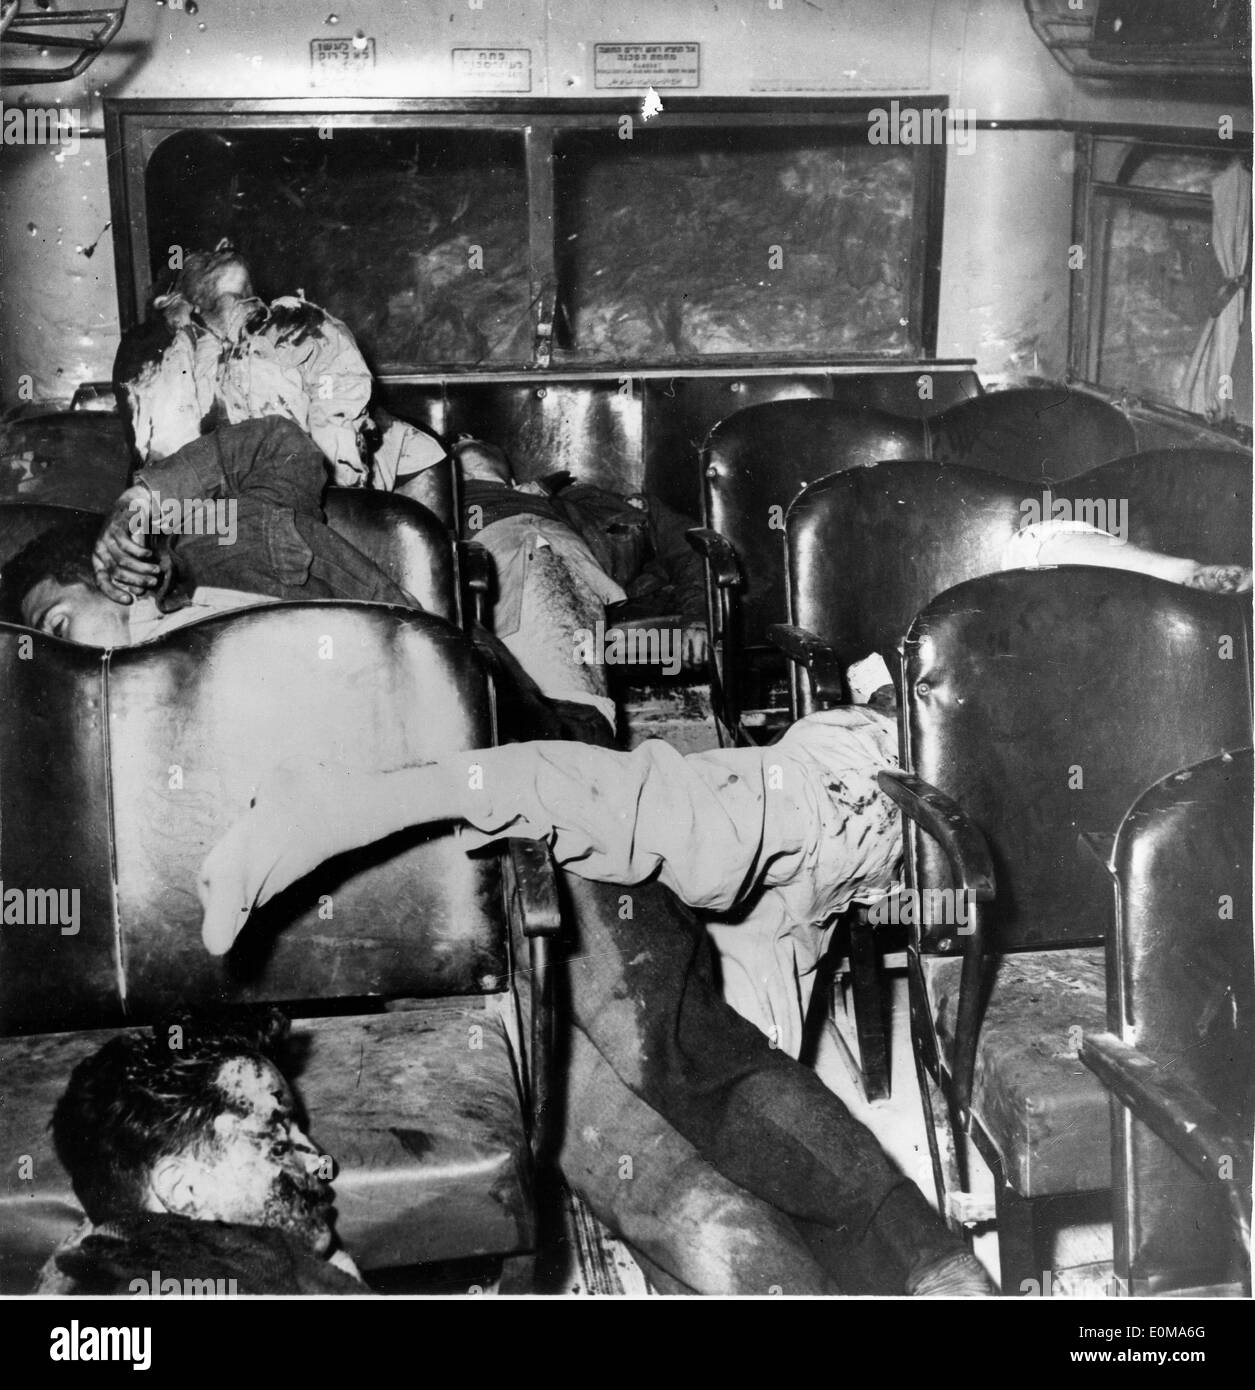 Mar 20, 1954; a Gerusalemme, Israele; undici vittime che giace accanto al bus dopo un attacco da parte organizzata forza araba. Musulmano Foto Stock